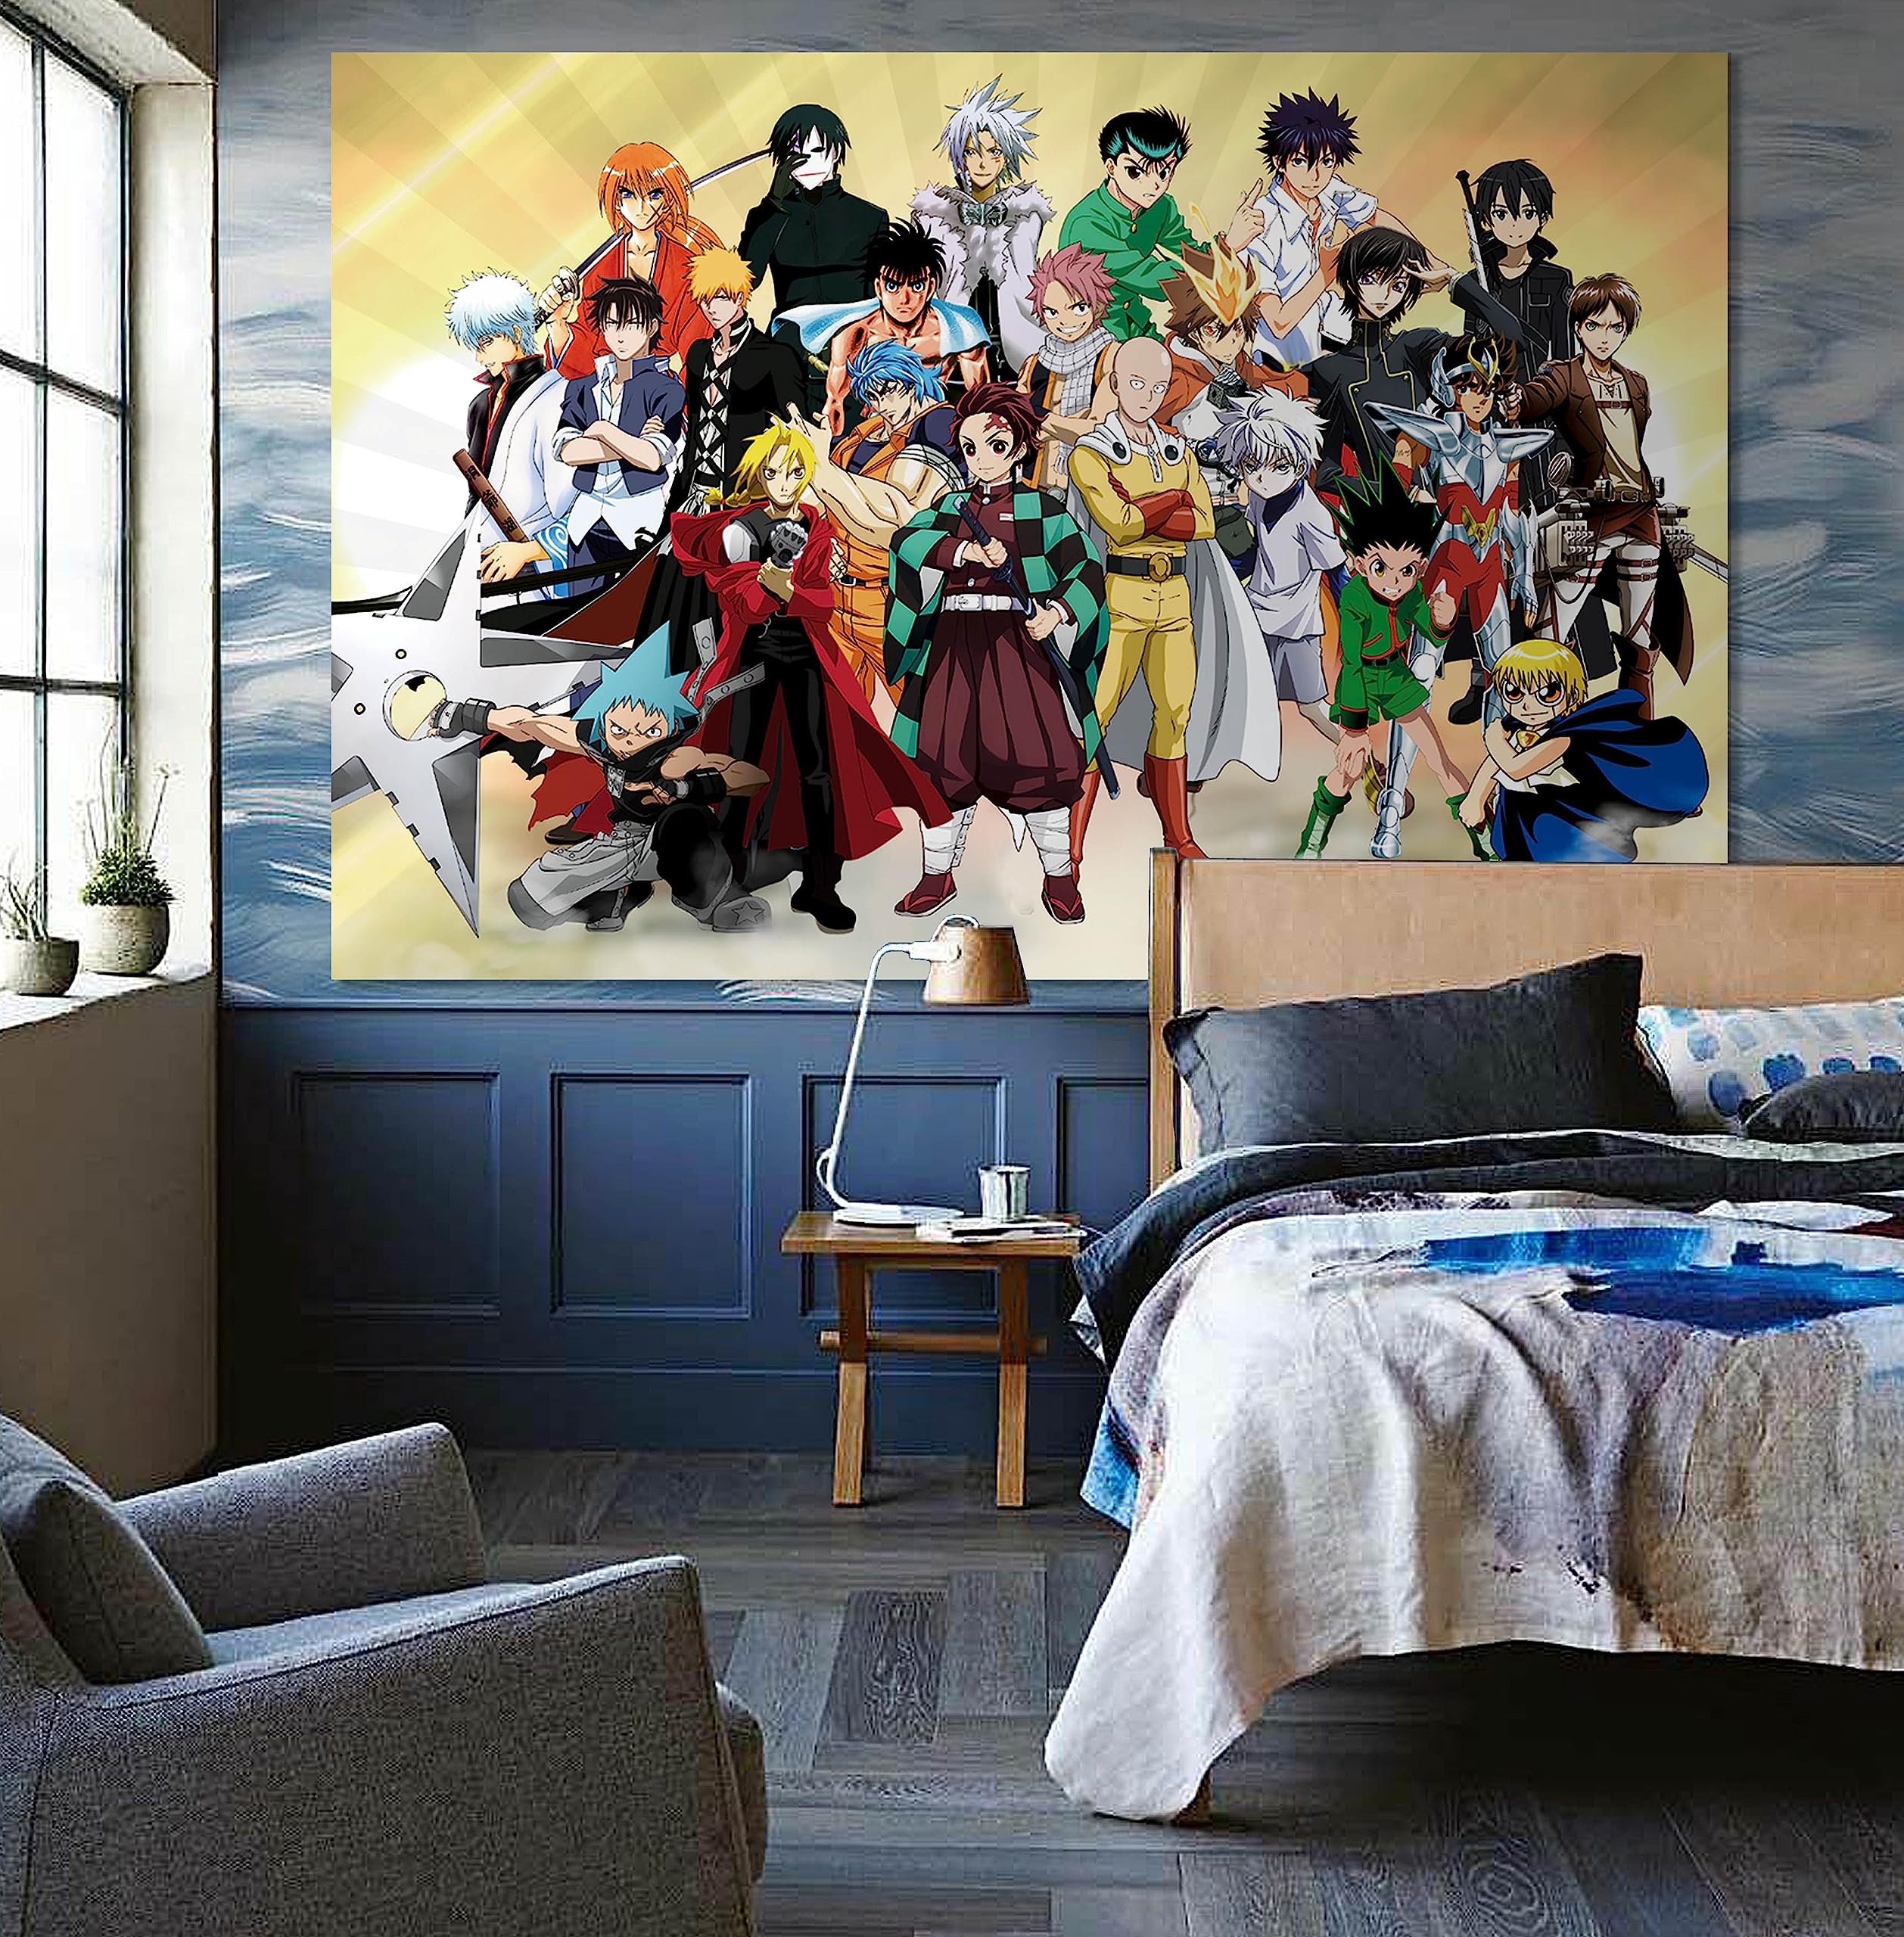 Mua Feyigy Anime Tapestry Room Decor Backdrop Cartoon Poster Wall ...